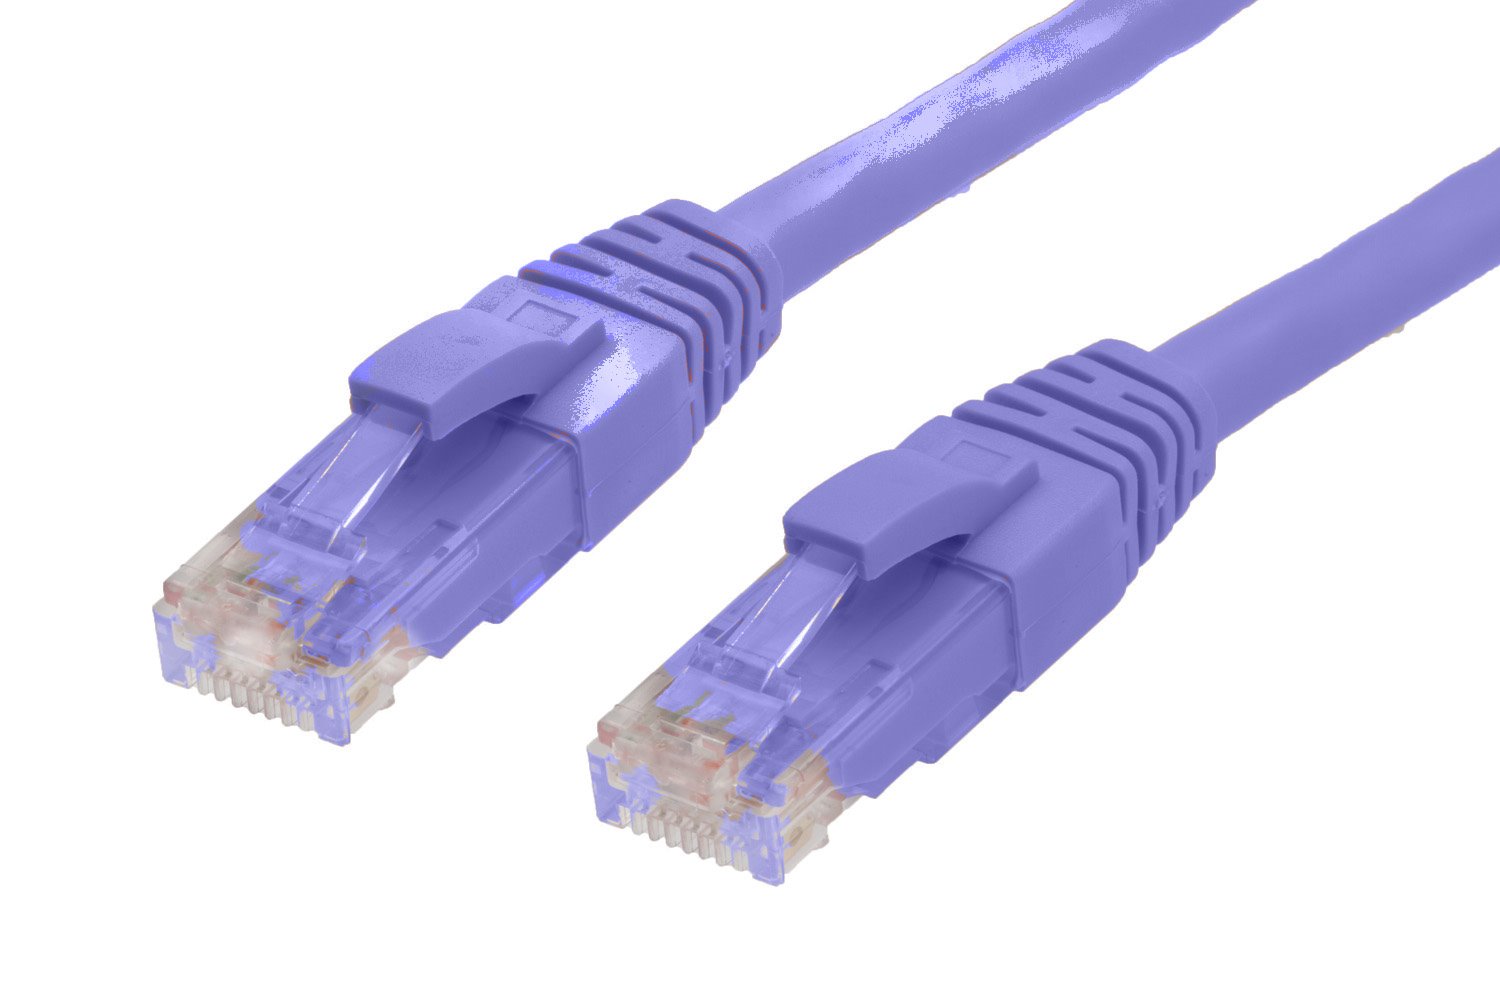 4Cabling 50M RJ45 Cat6 Ethernet Cable. Purple